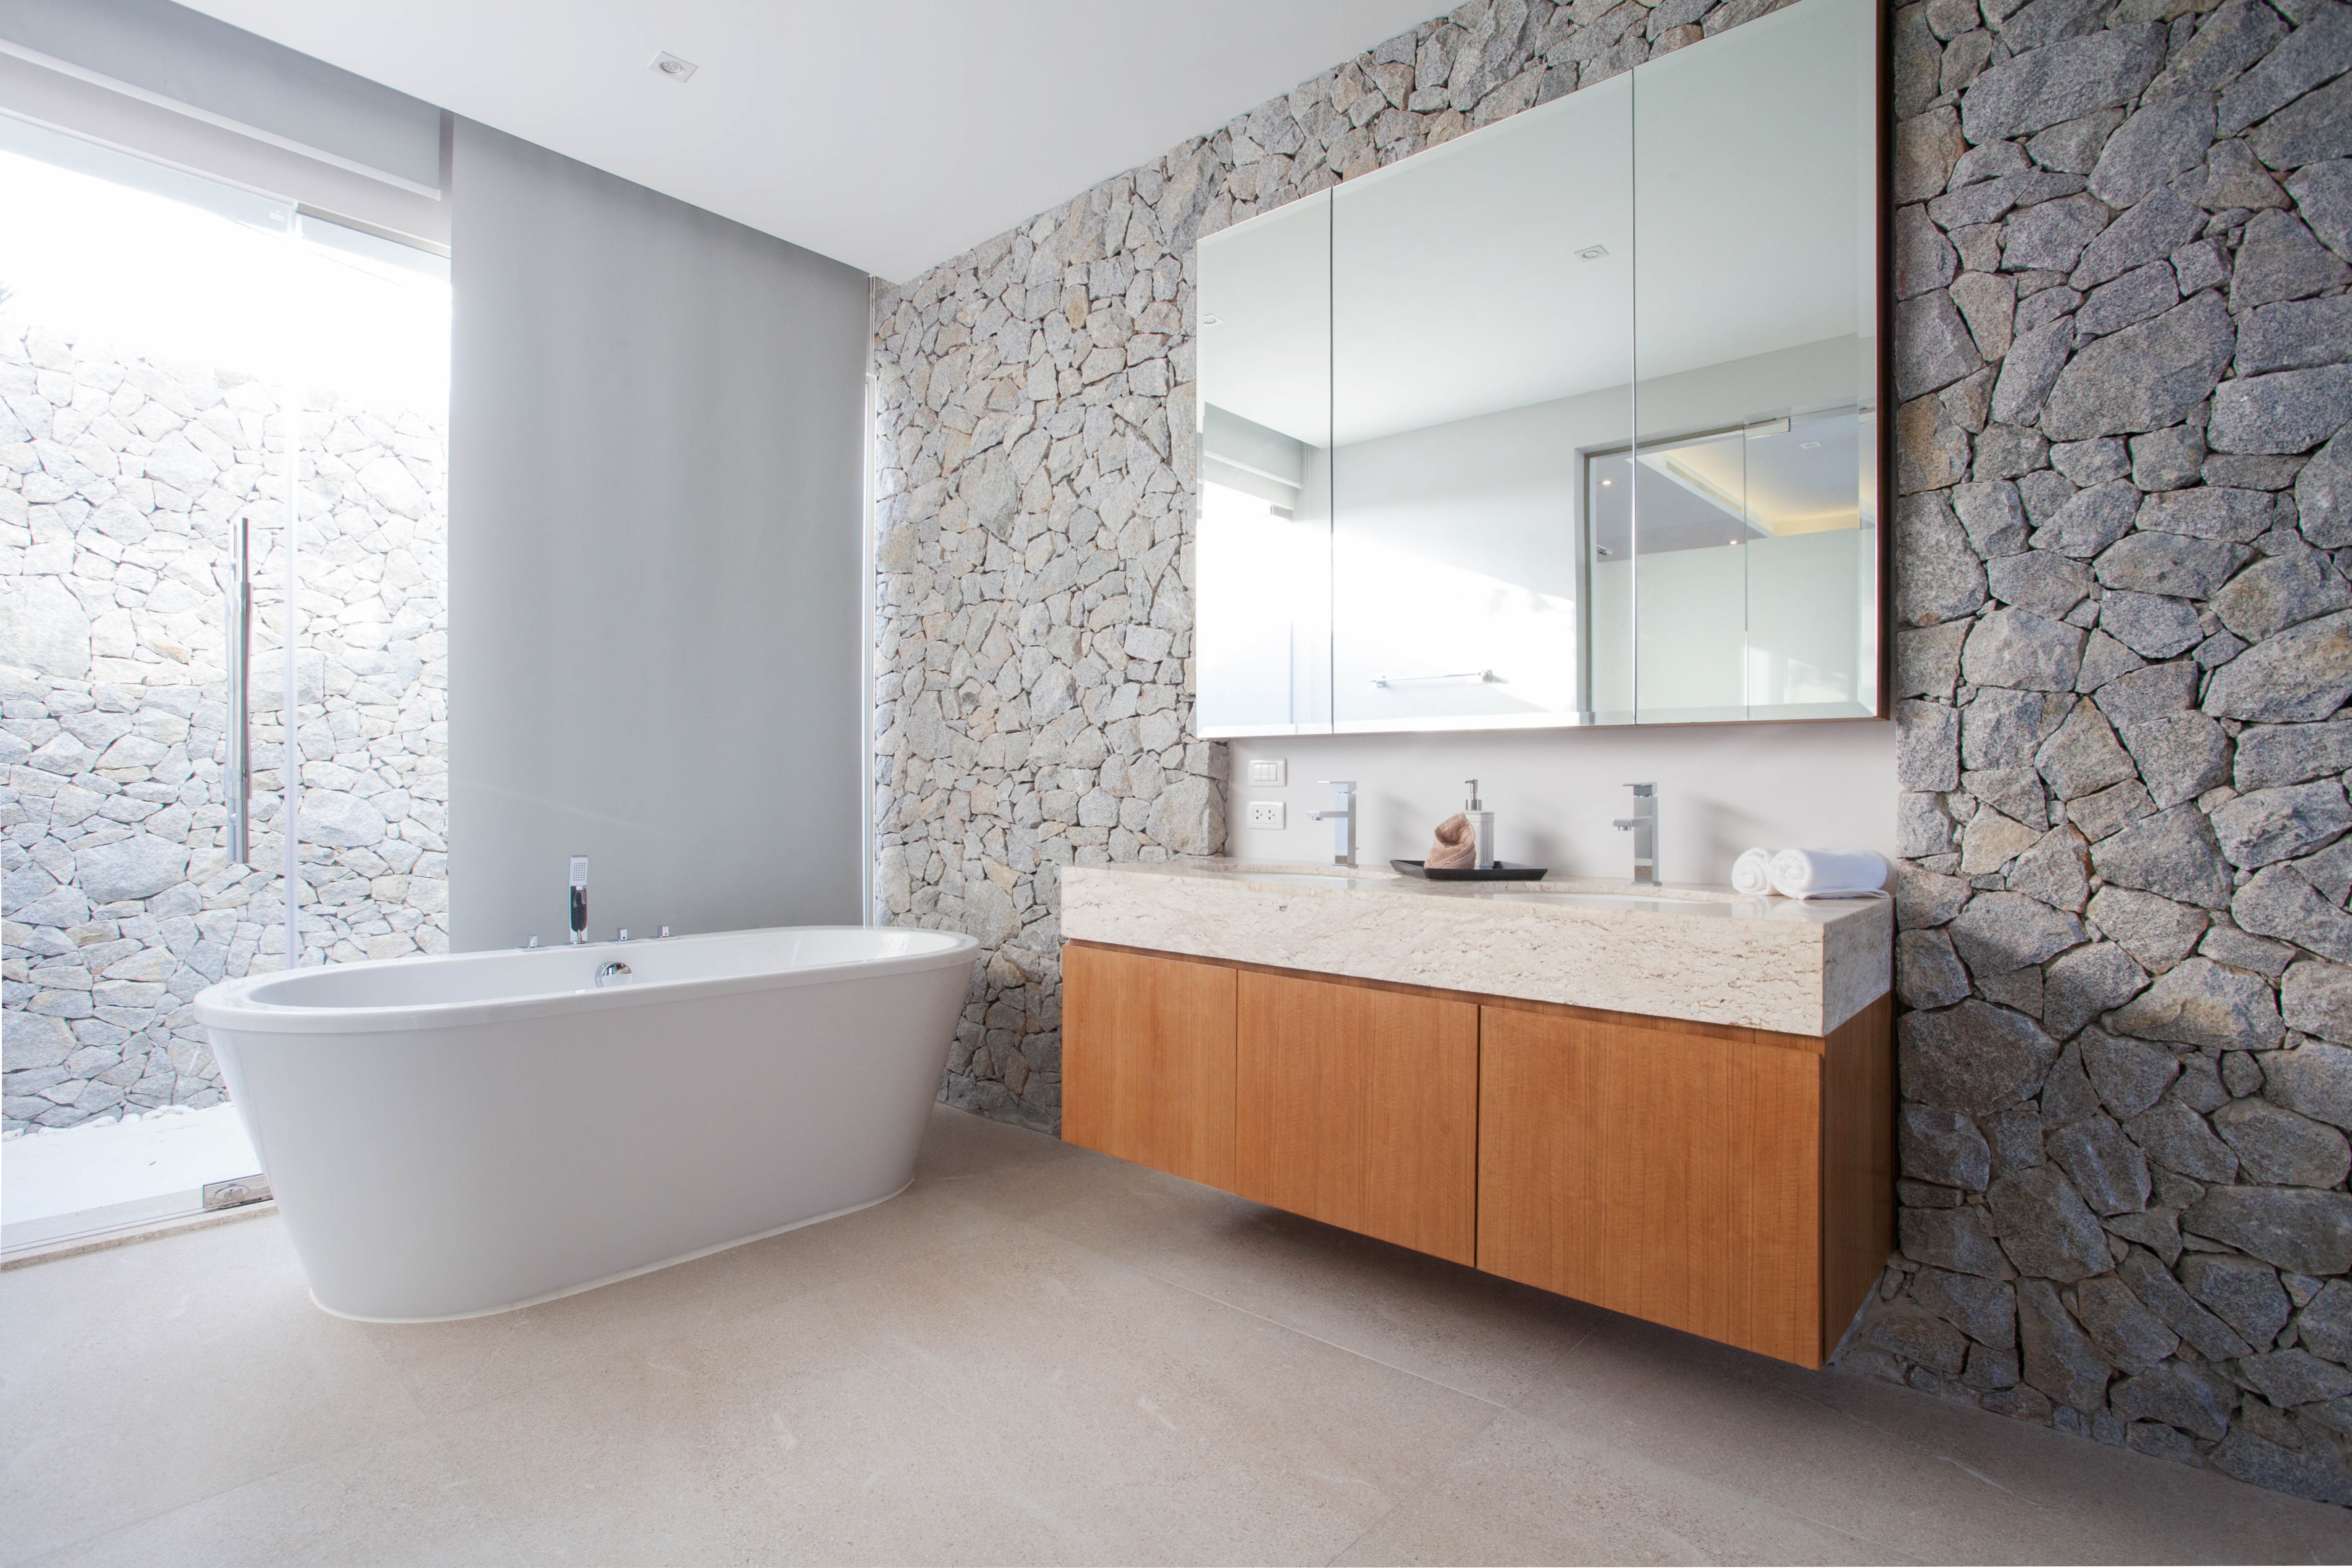 Luxury bathroom with tile floor